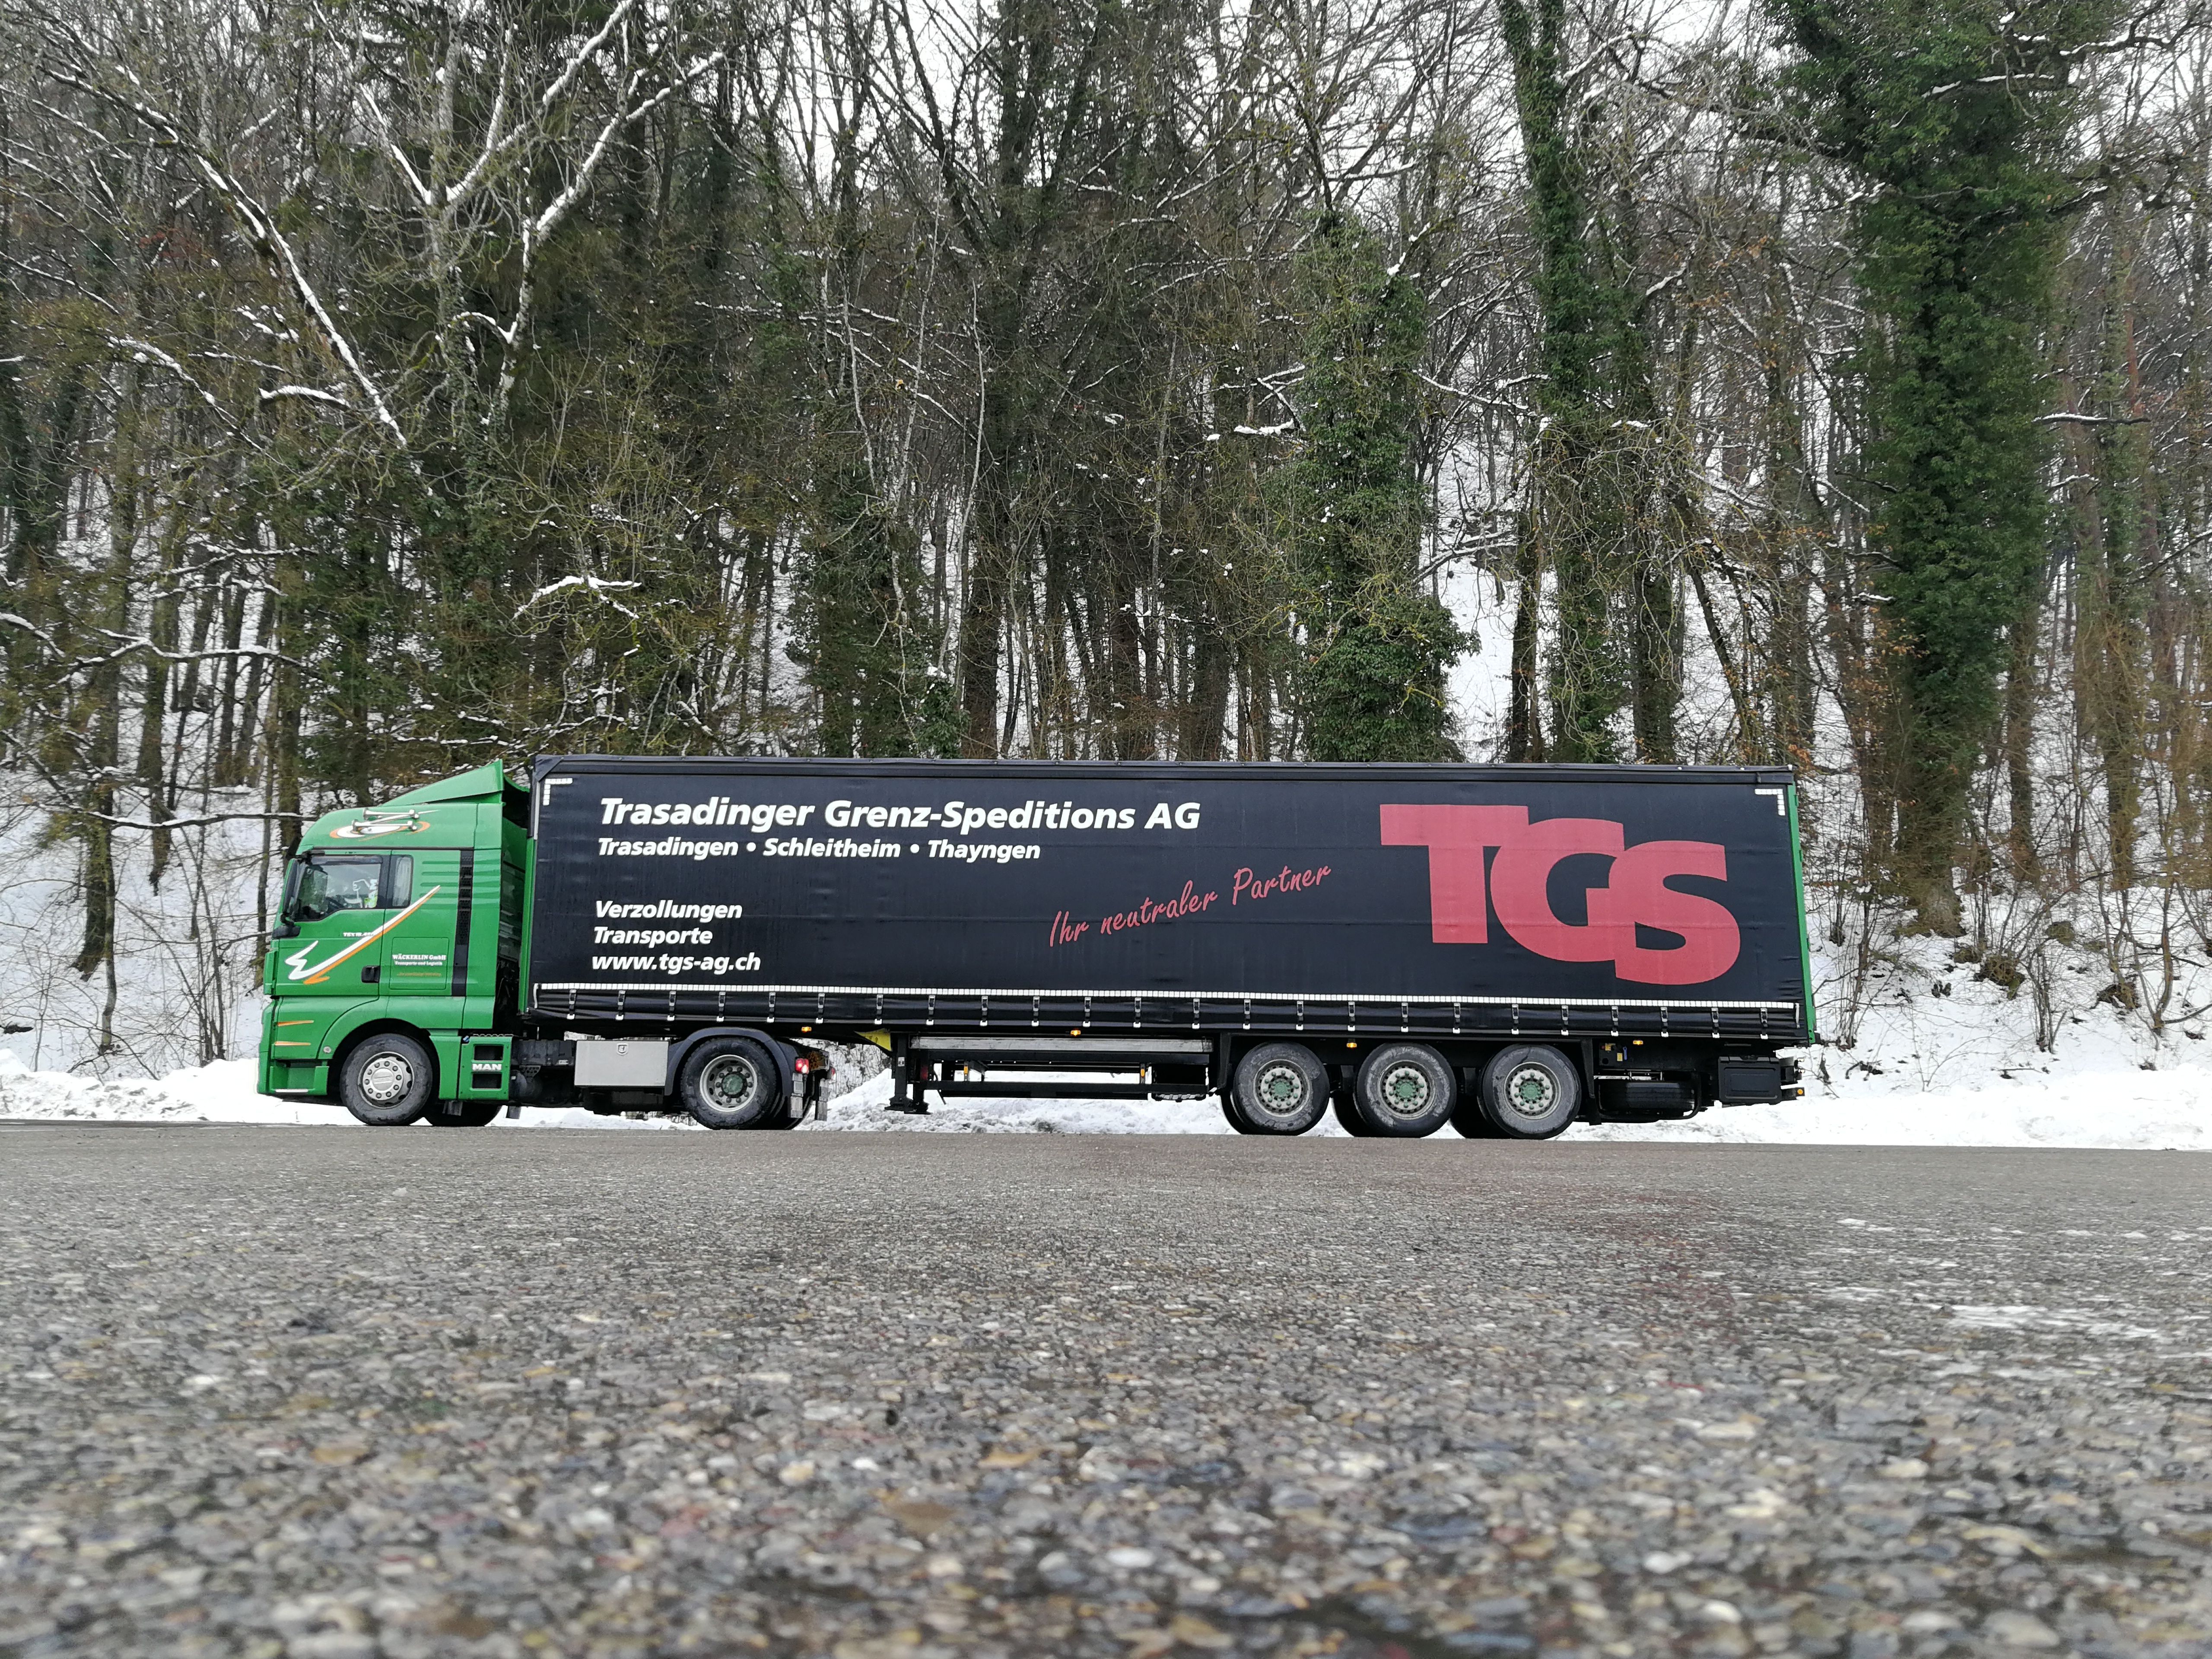 TGS Trasadinger Grenz-Speditions AG - Hauptbüro Trasadingen - Schweiz